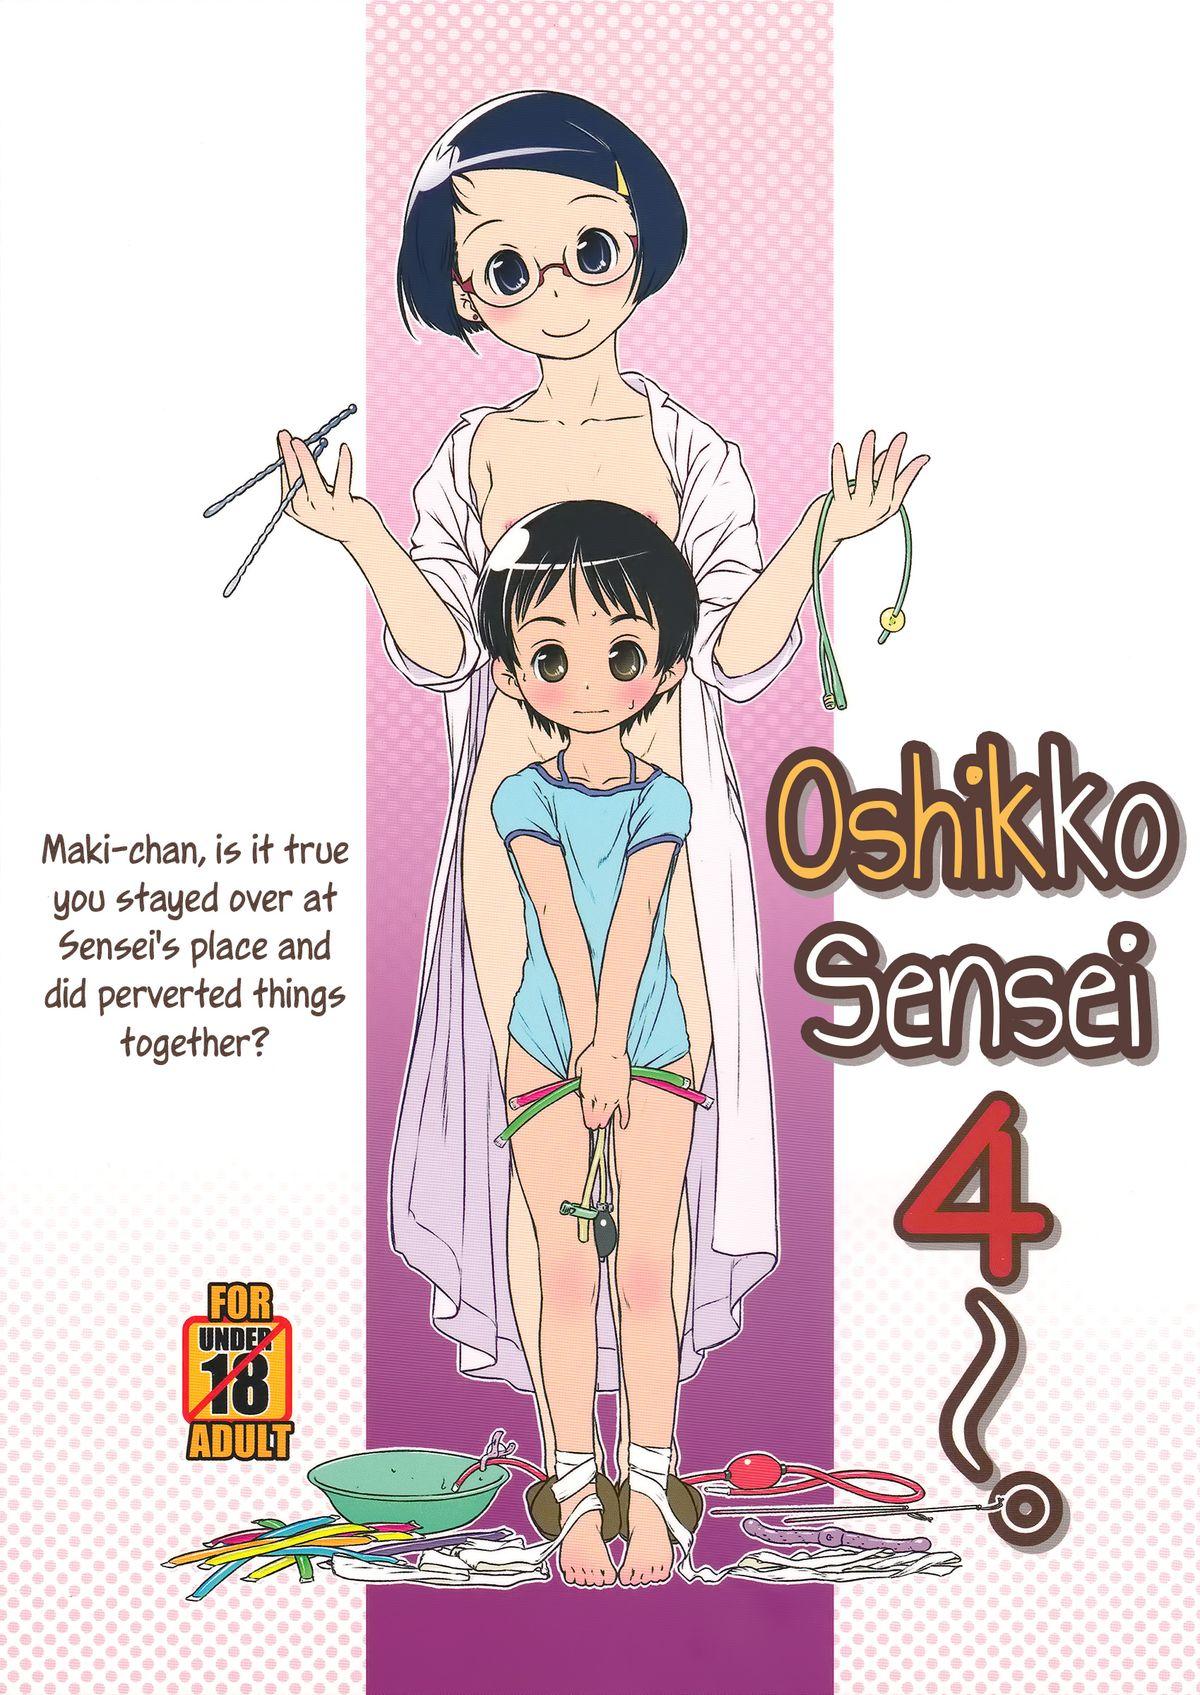 Oshikko Sensei 4 0